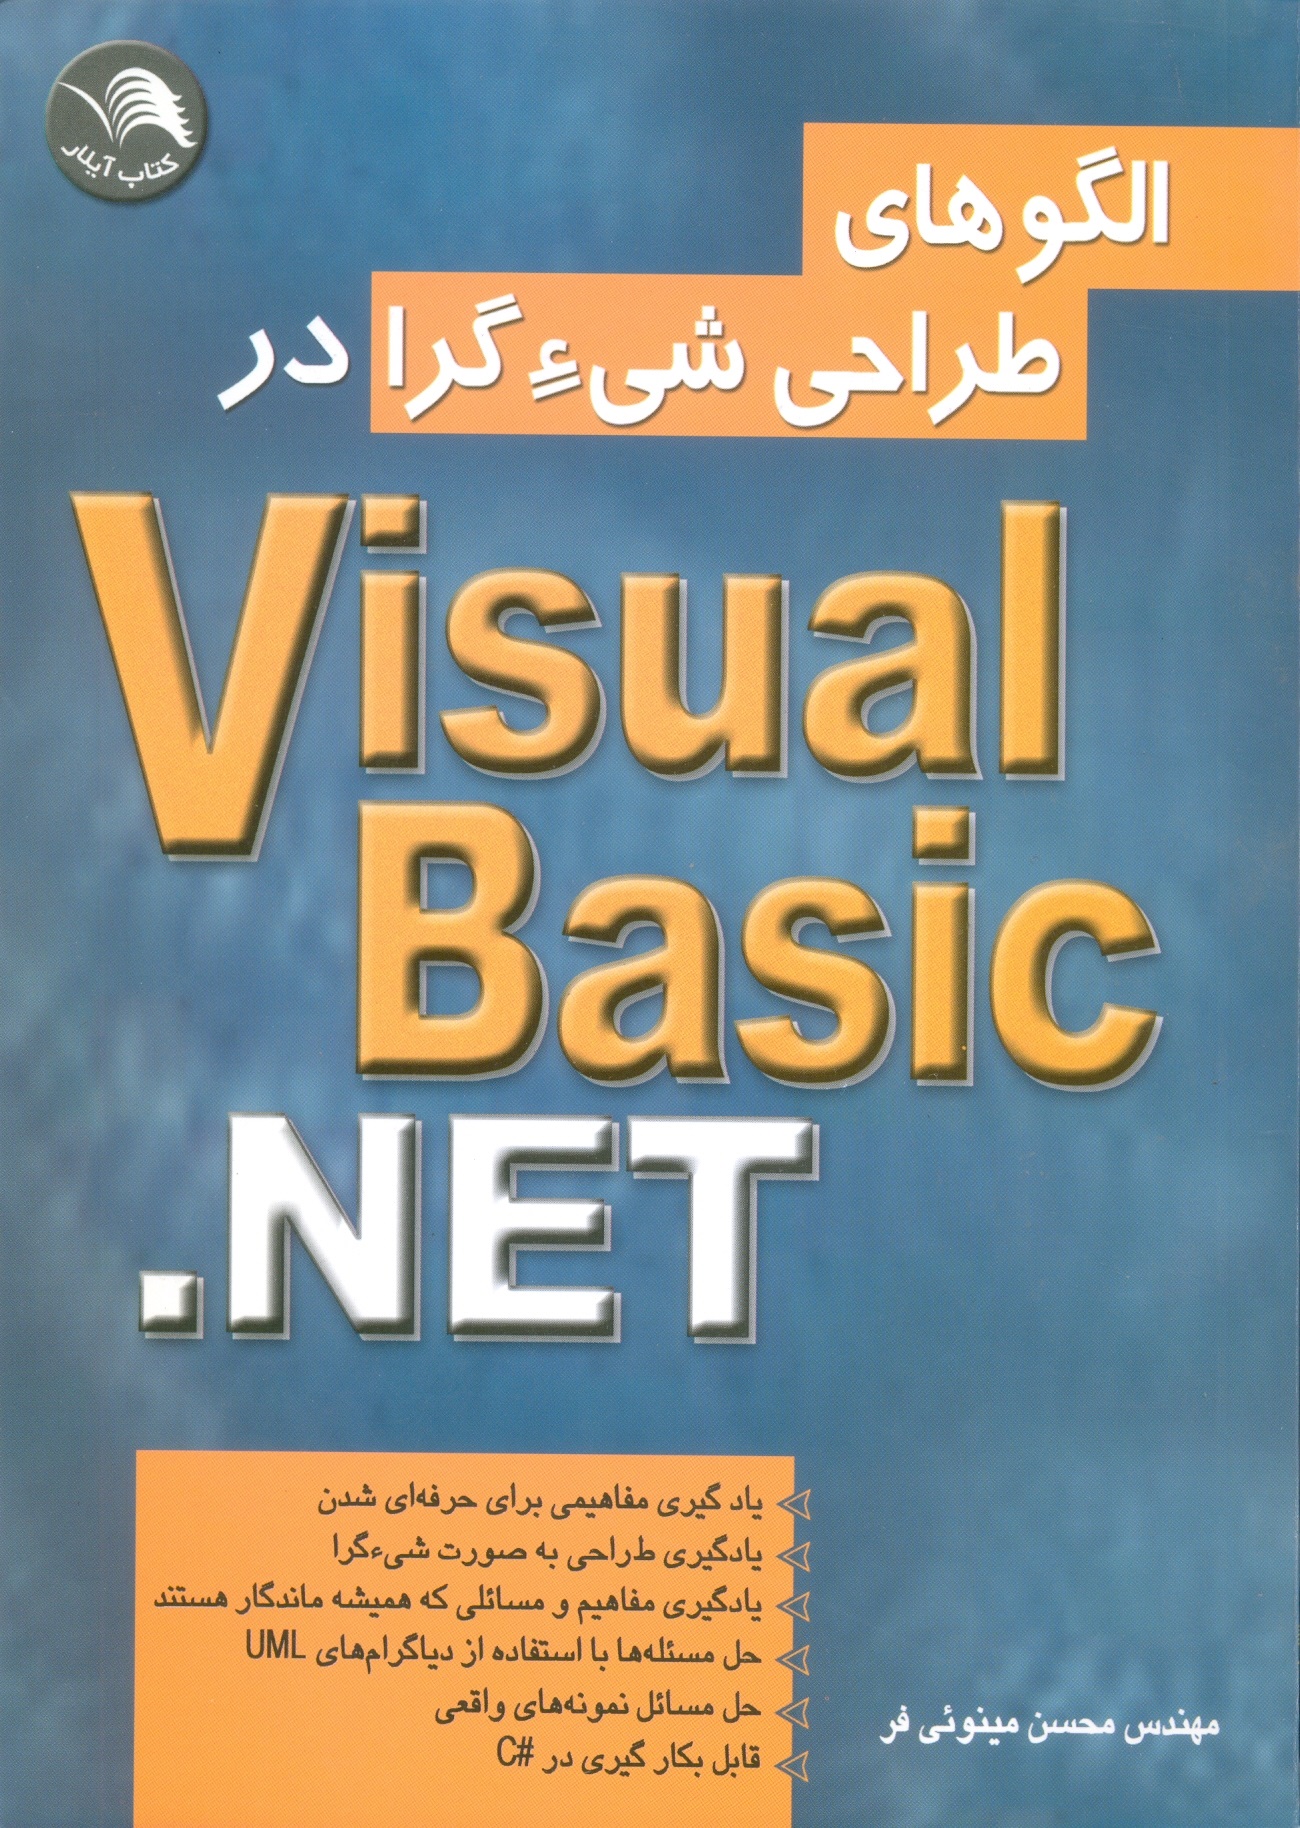 الگوهای طراحی شی ء گرا در VisualBasic.NET  ویژوال بیسیک -مینویی فر/آیلار